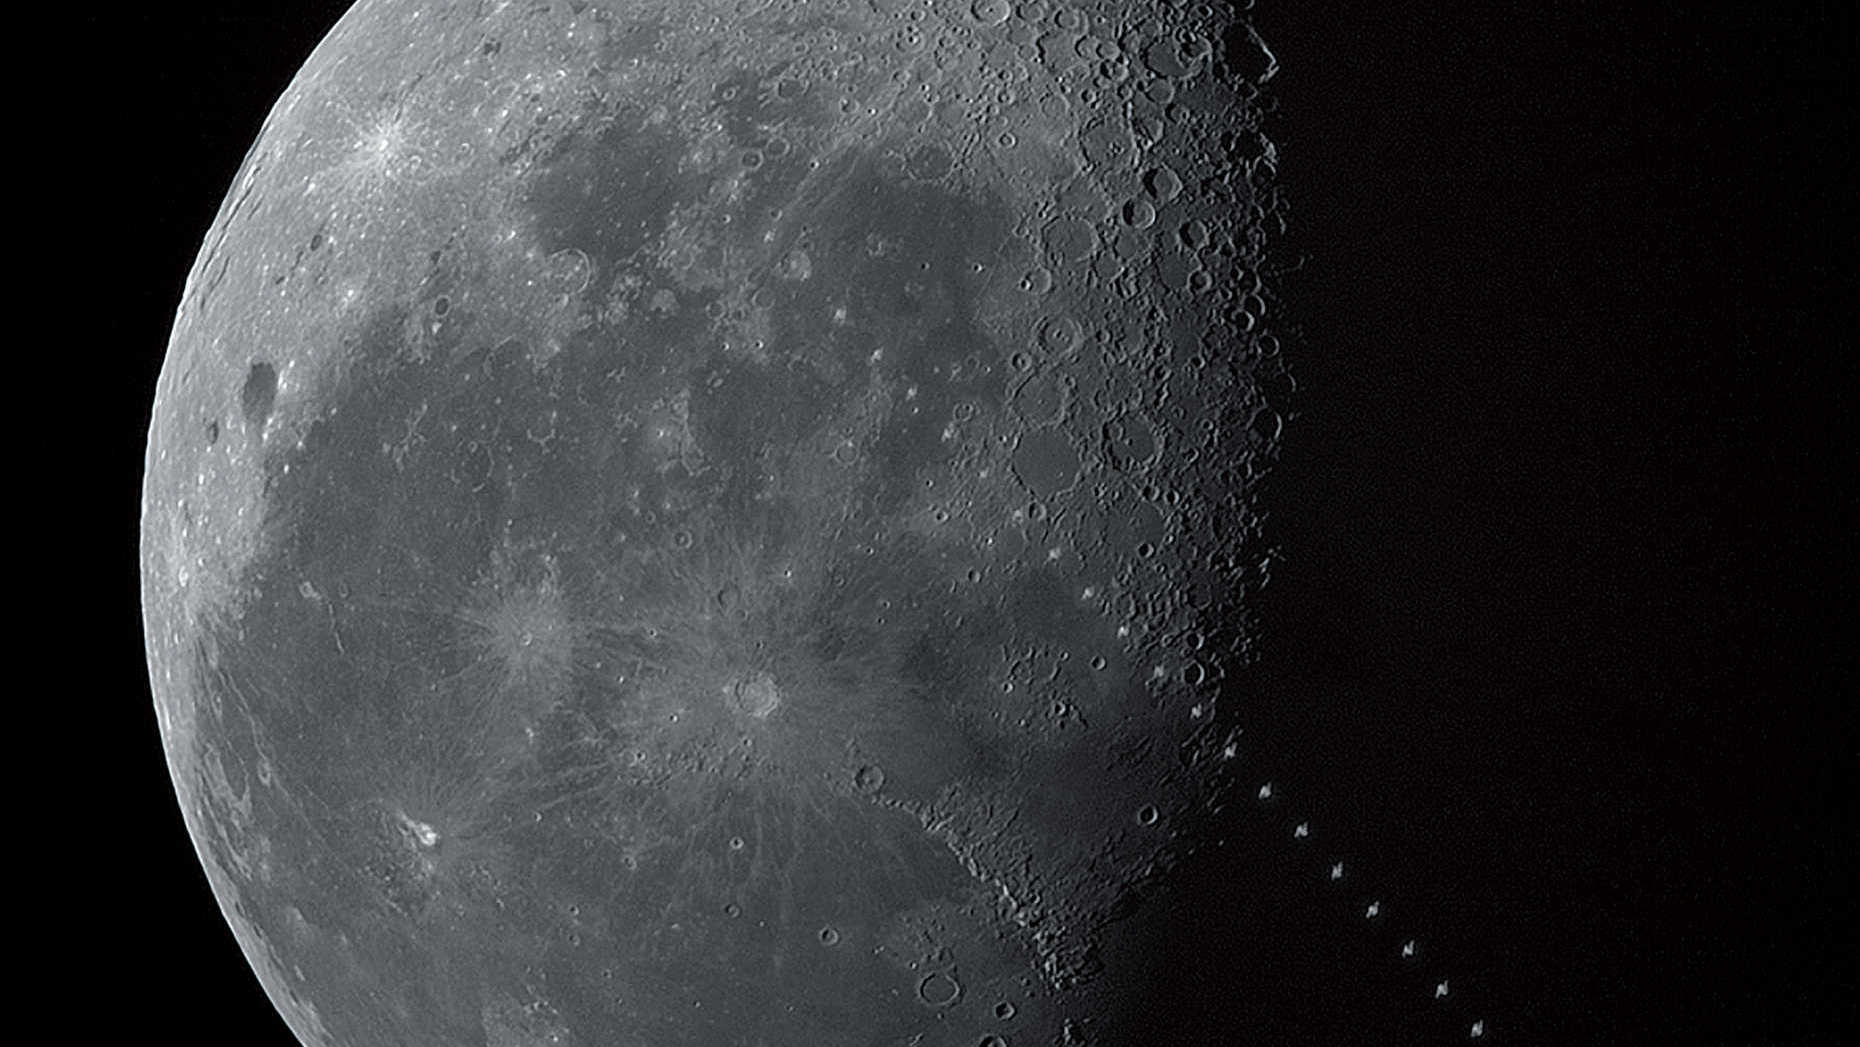 Tidigt på morgonen den 17 maj 2017, en klar försommarmorgon över Todtnau i södra Schwarzwald, passerade den internationella rymdstationen framför den avtagande månen: Transiten ägde rum kl. 08:05:49 CEST när månen stod 19,4 grader över sydsydvästhorisonten. Avståndet till den 2,3 m ljusstarka ISS från observationsplatsen var 1016,7 km, vilket gjorde att transiten varade i 1,2 sekunder och rymdstationen såg motsvarande liten ut. Bilden är ett montage av 51 bilder i Photoshop. U. Dittler





